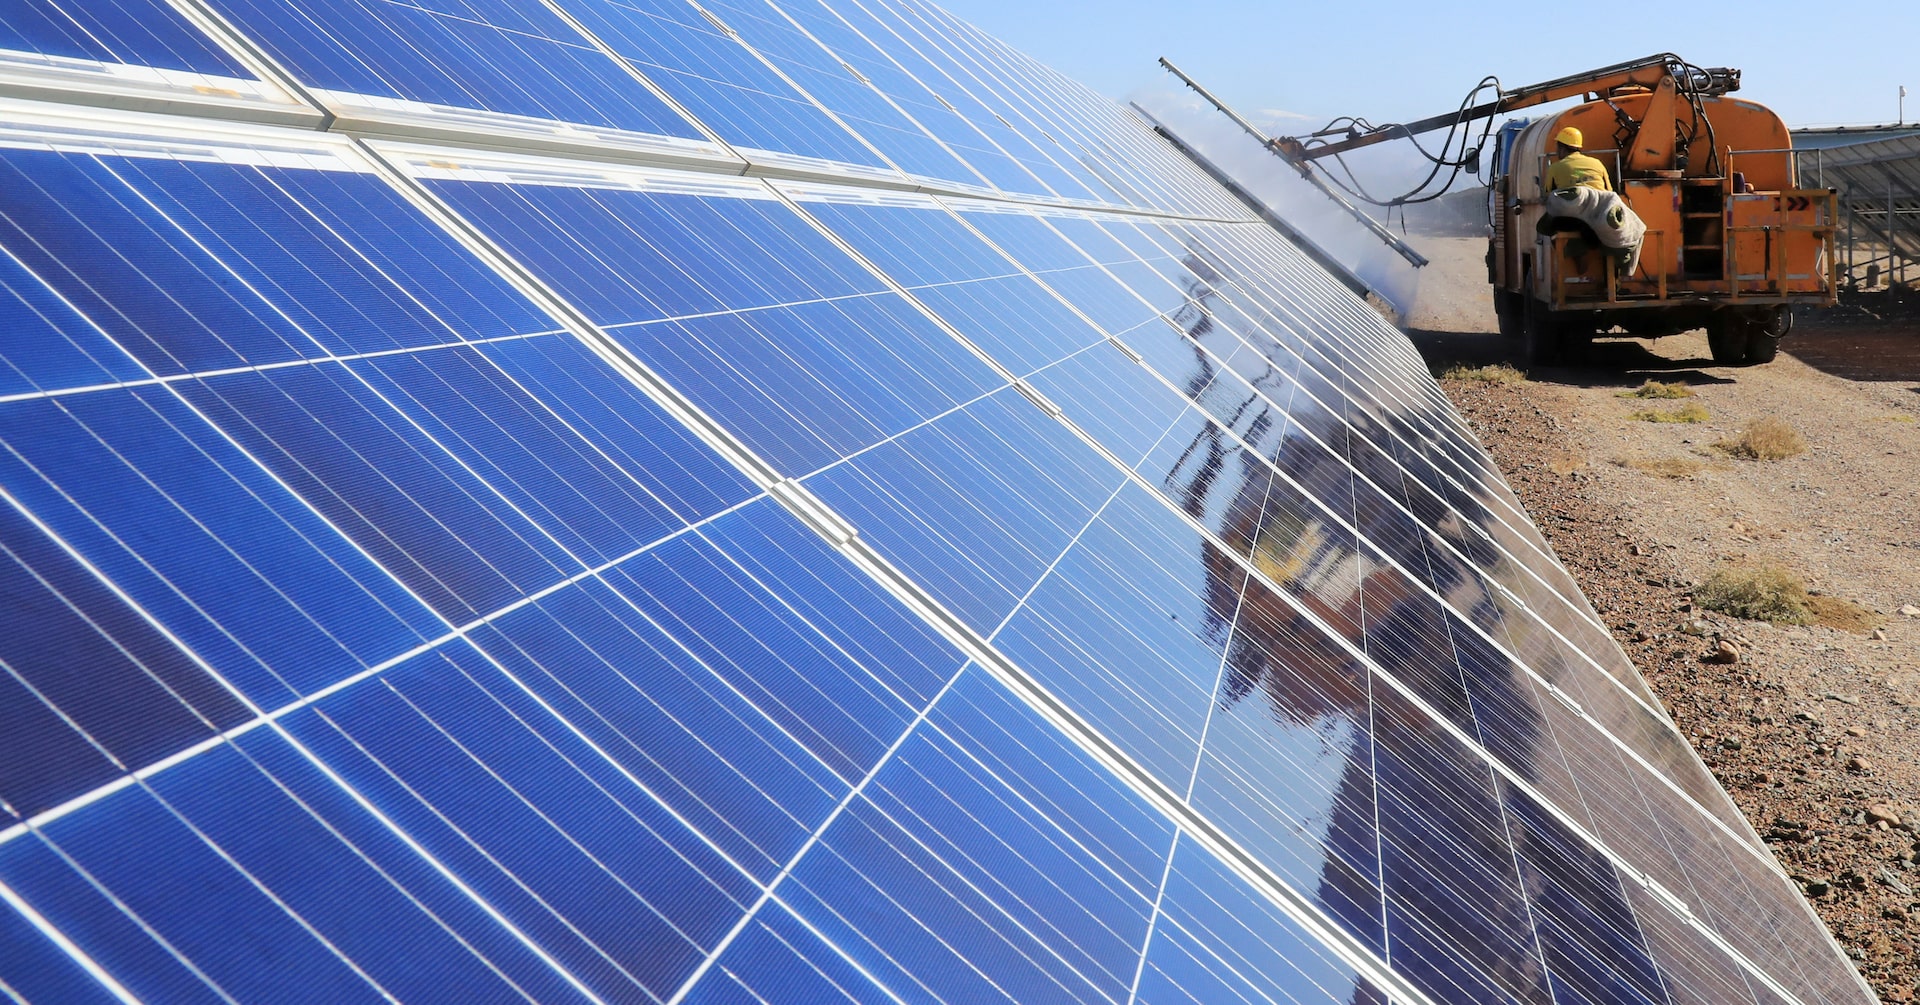 中国太陽光パネルメーカー、価格急落で政府に介入求める